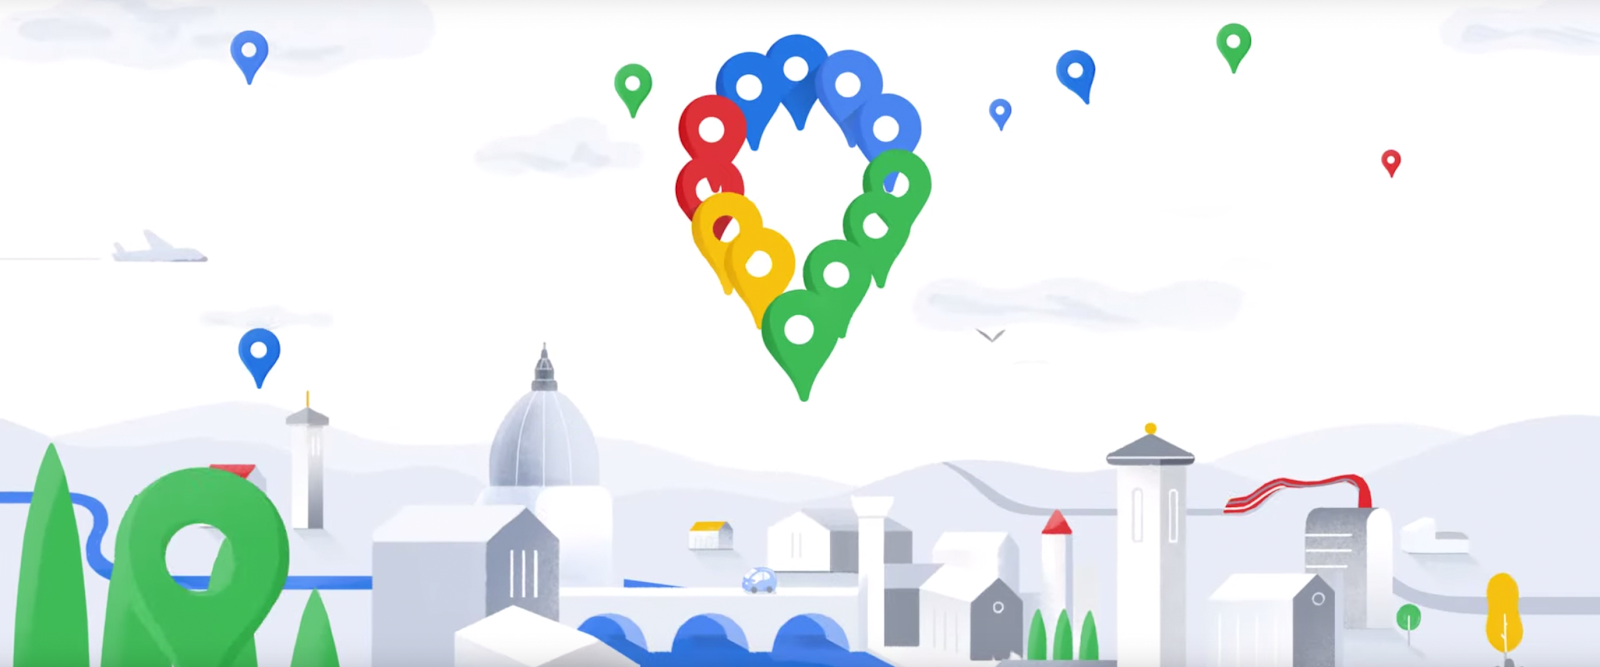 Google Maps - 15 anos - novo PIN